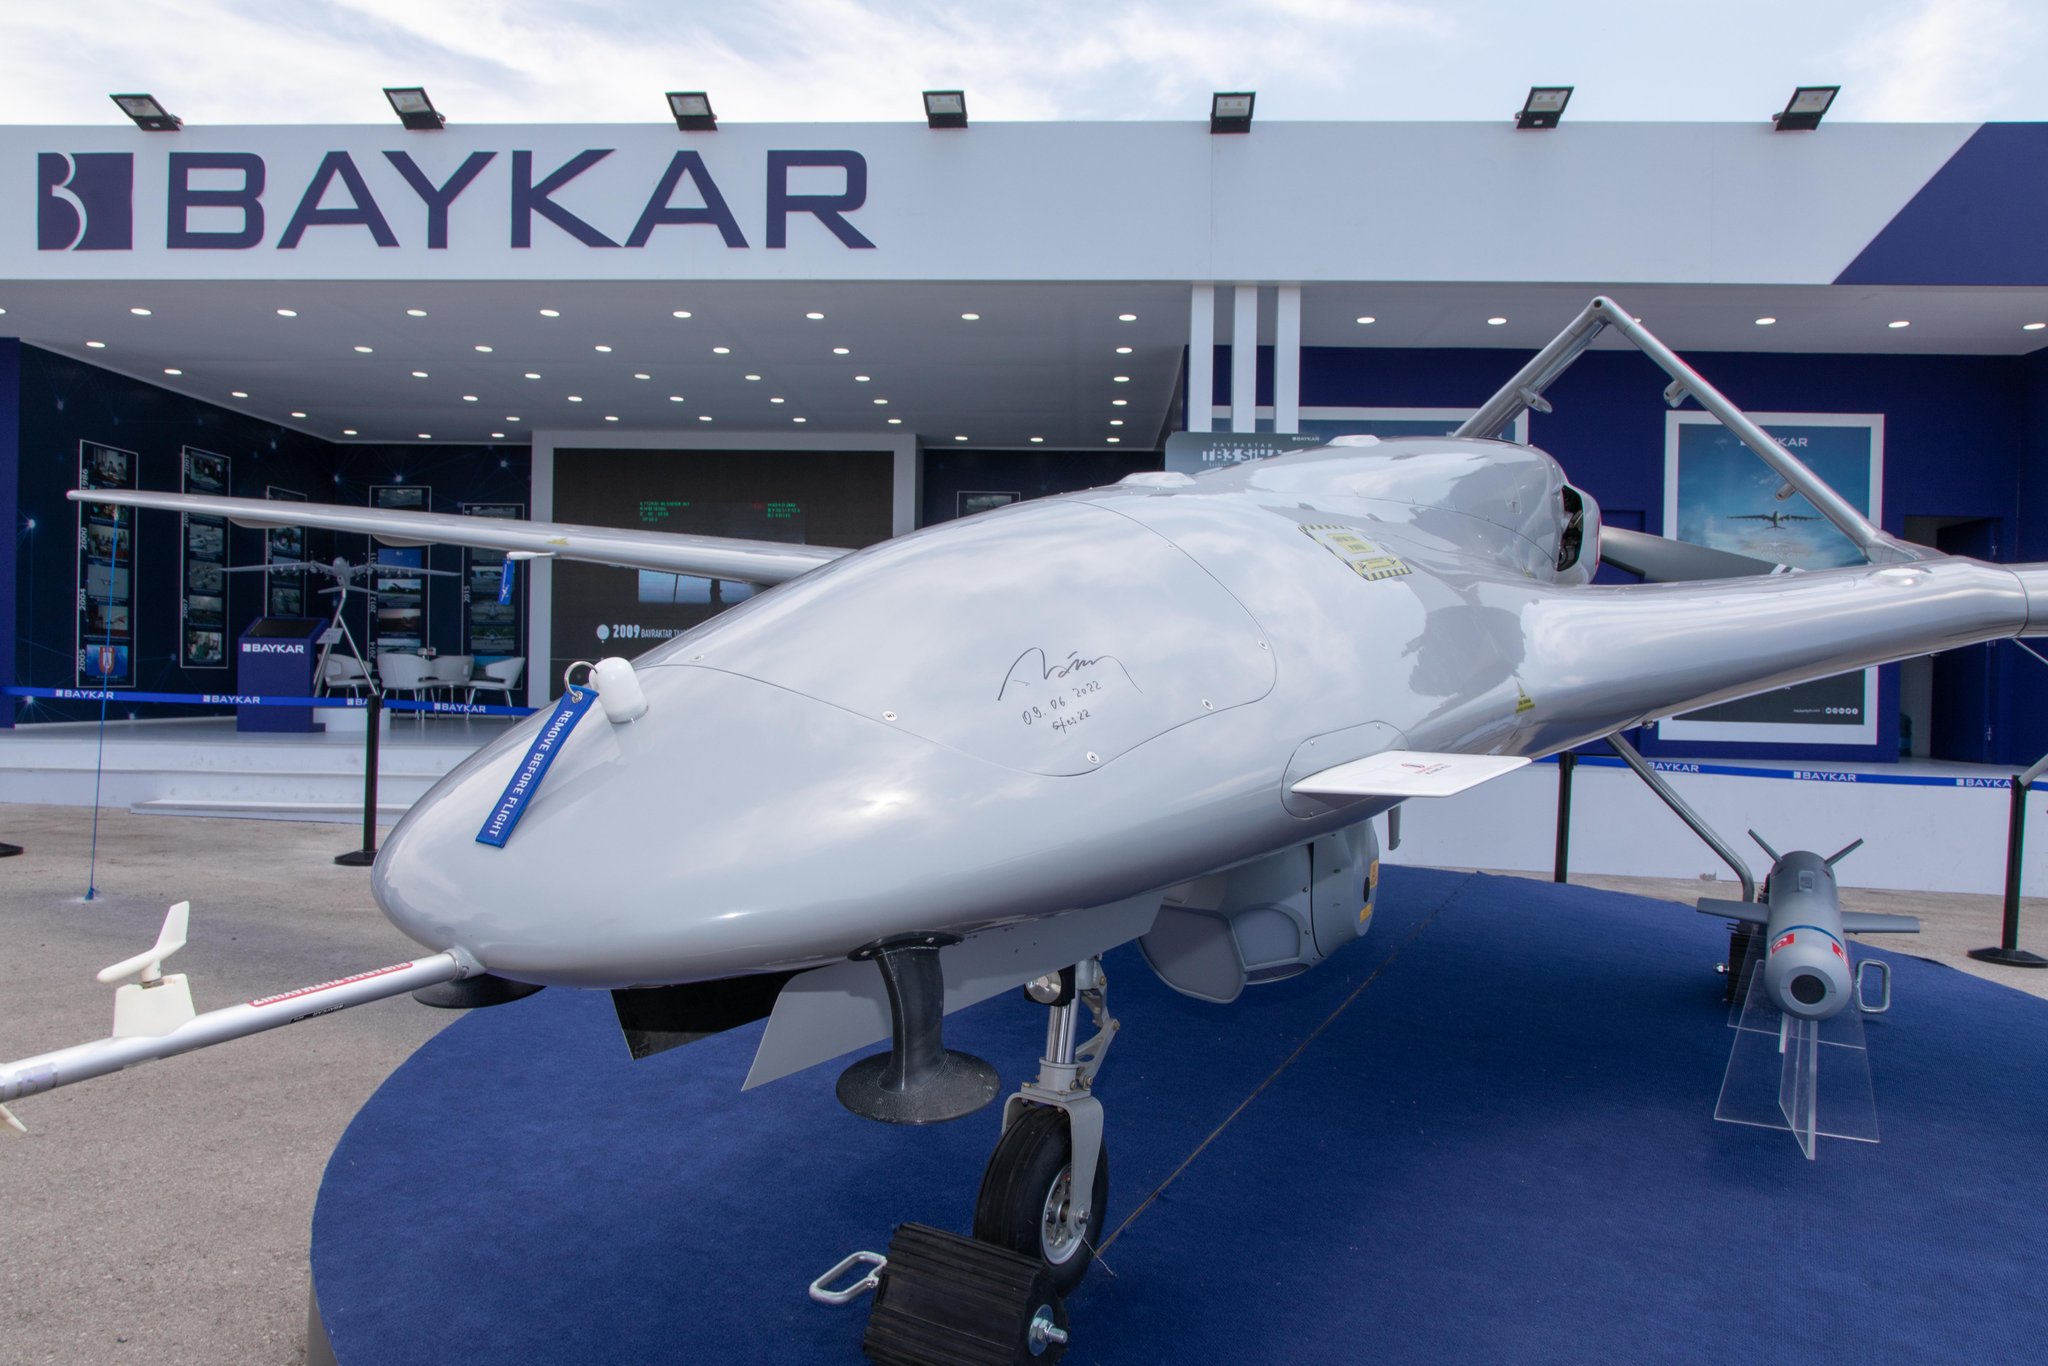 Турецкая компания Baykar создала в Украине компанию по производству беспилотников Bayraktar, под завод приобрели участок — посол